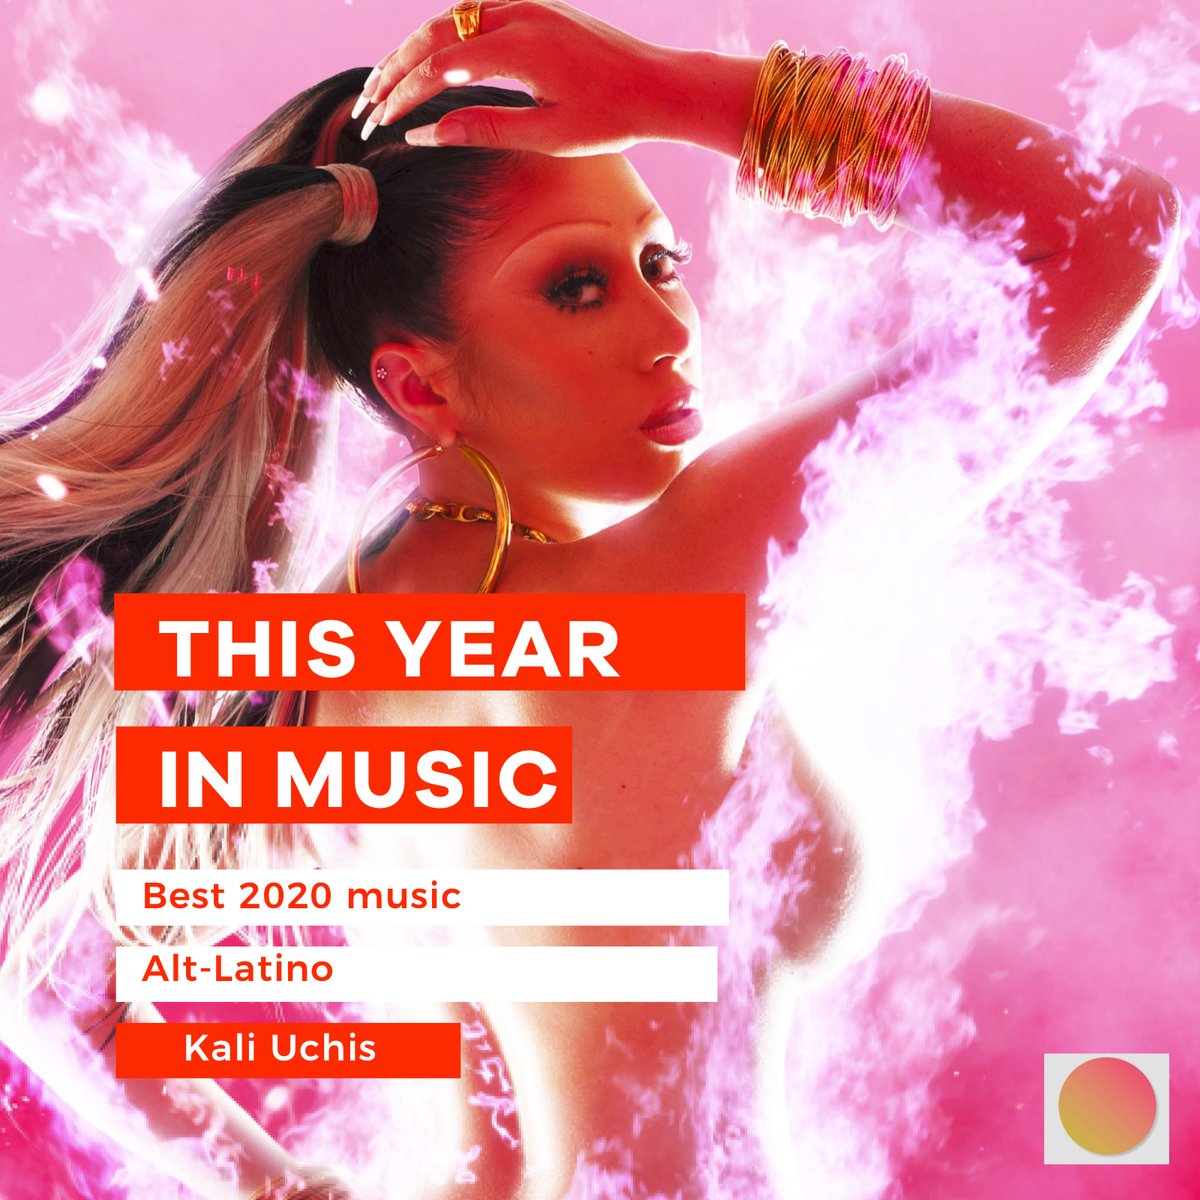 Музыка лучших песен 2020. Kali Uchis обложка. Сборник песен 2020. Песни 2020 года. Песни из 2020.